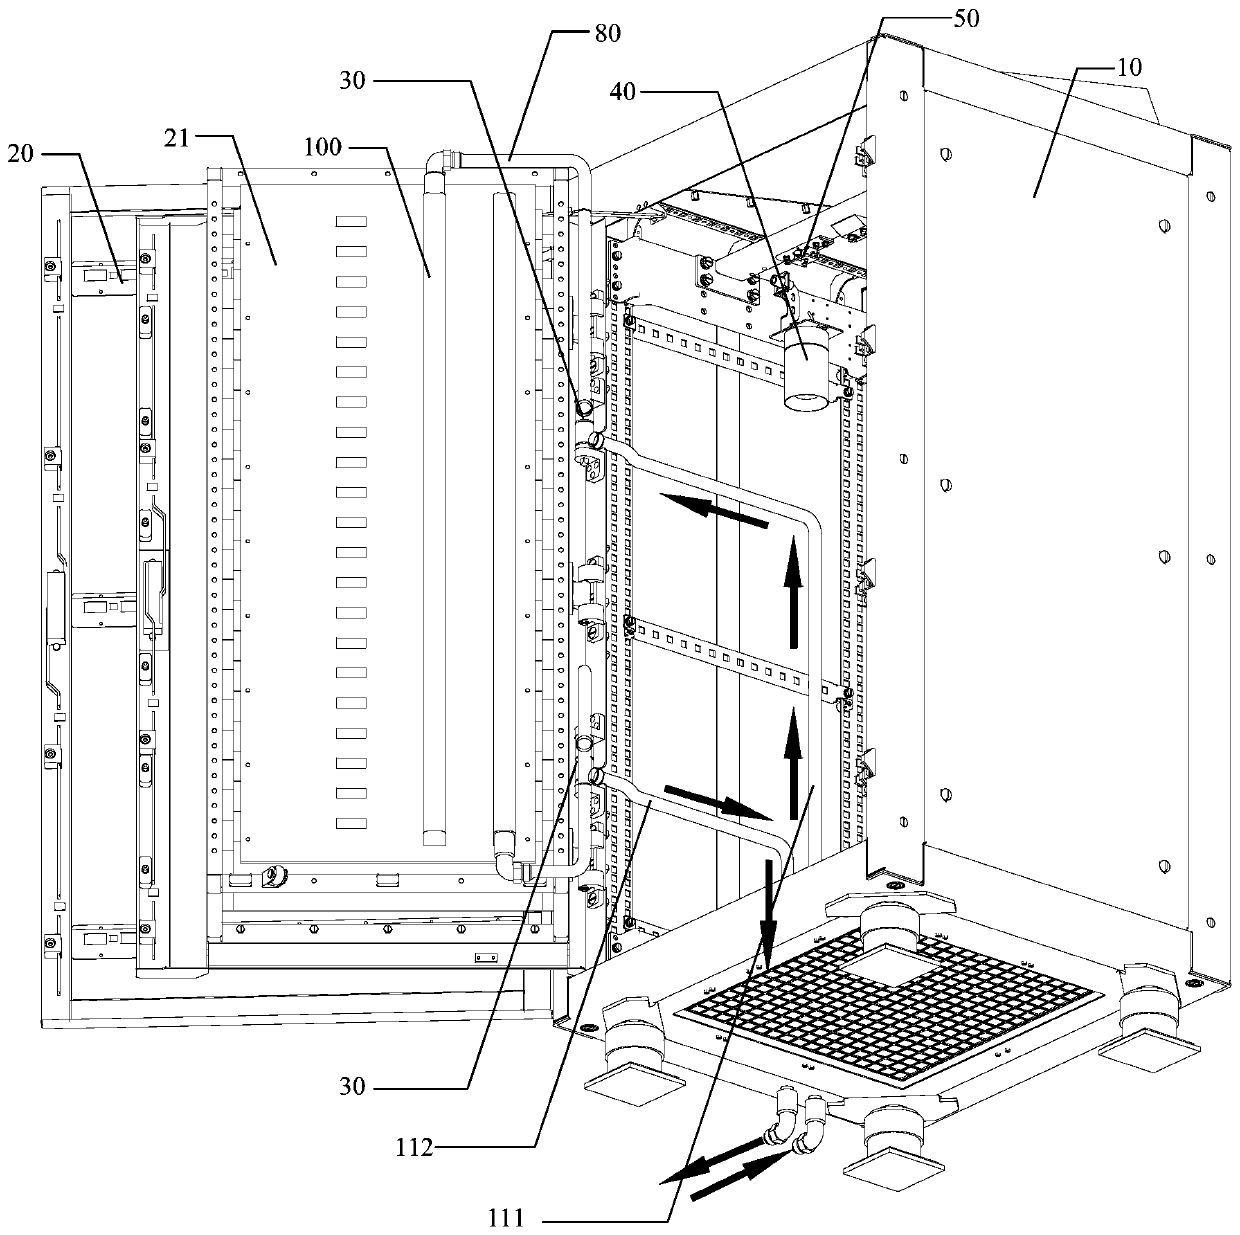 Liquid-cooling cradle cabinet